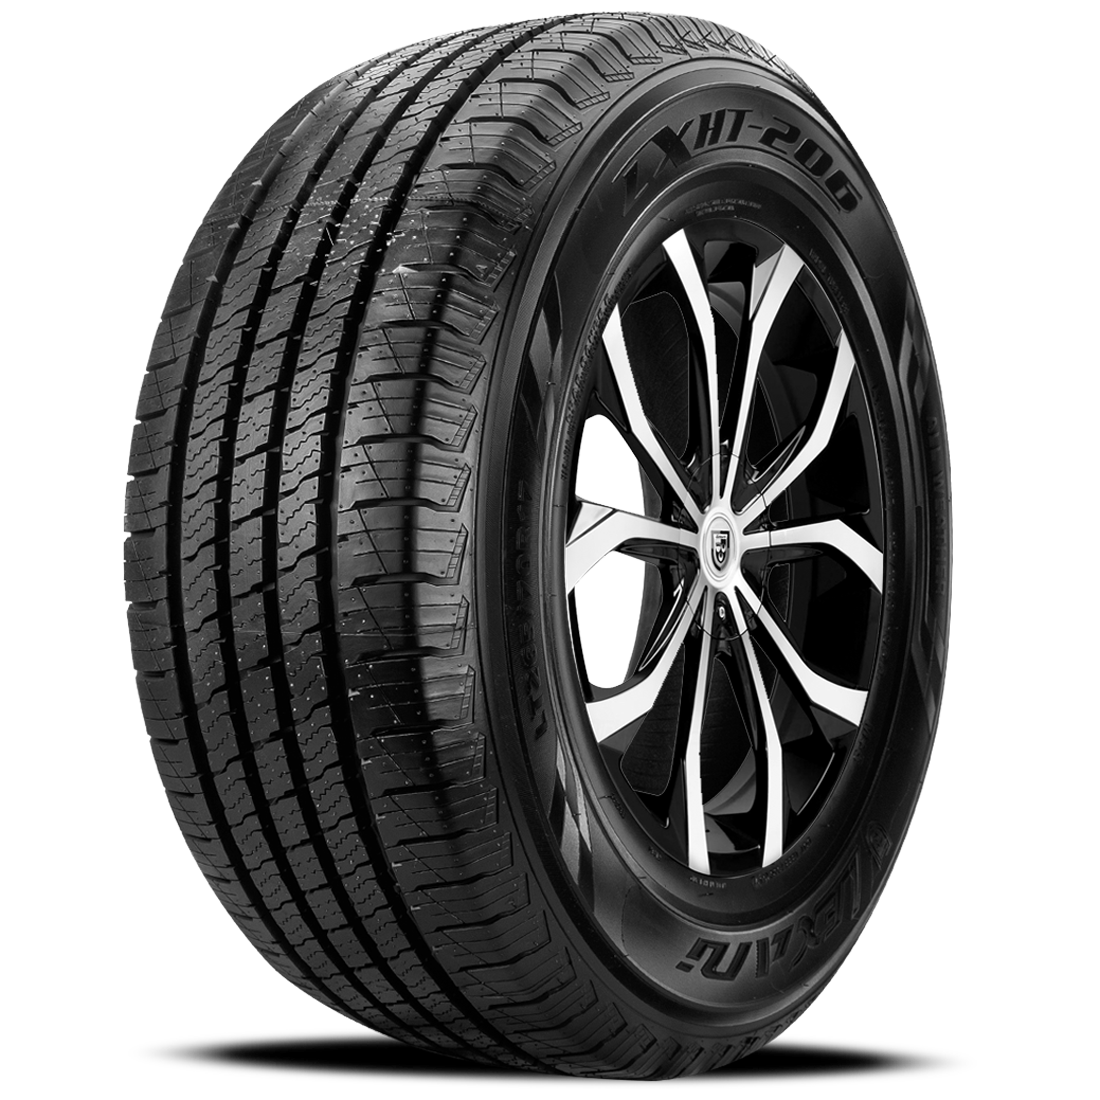 LEXANI LXHT-206 P235/60R18 (29.1X9.3R 18) Tires